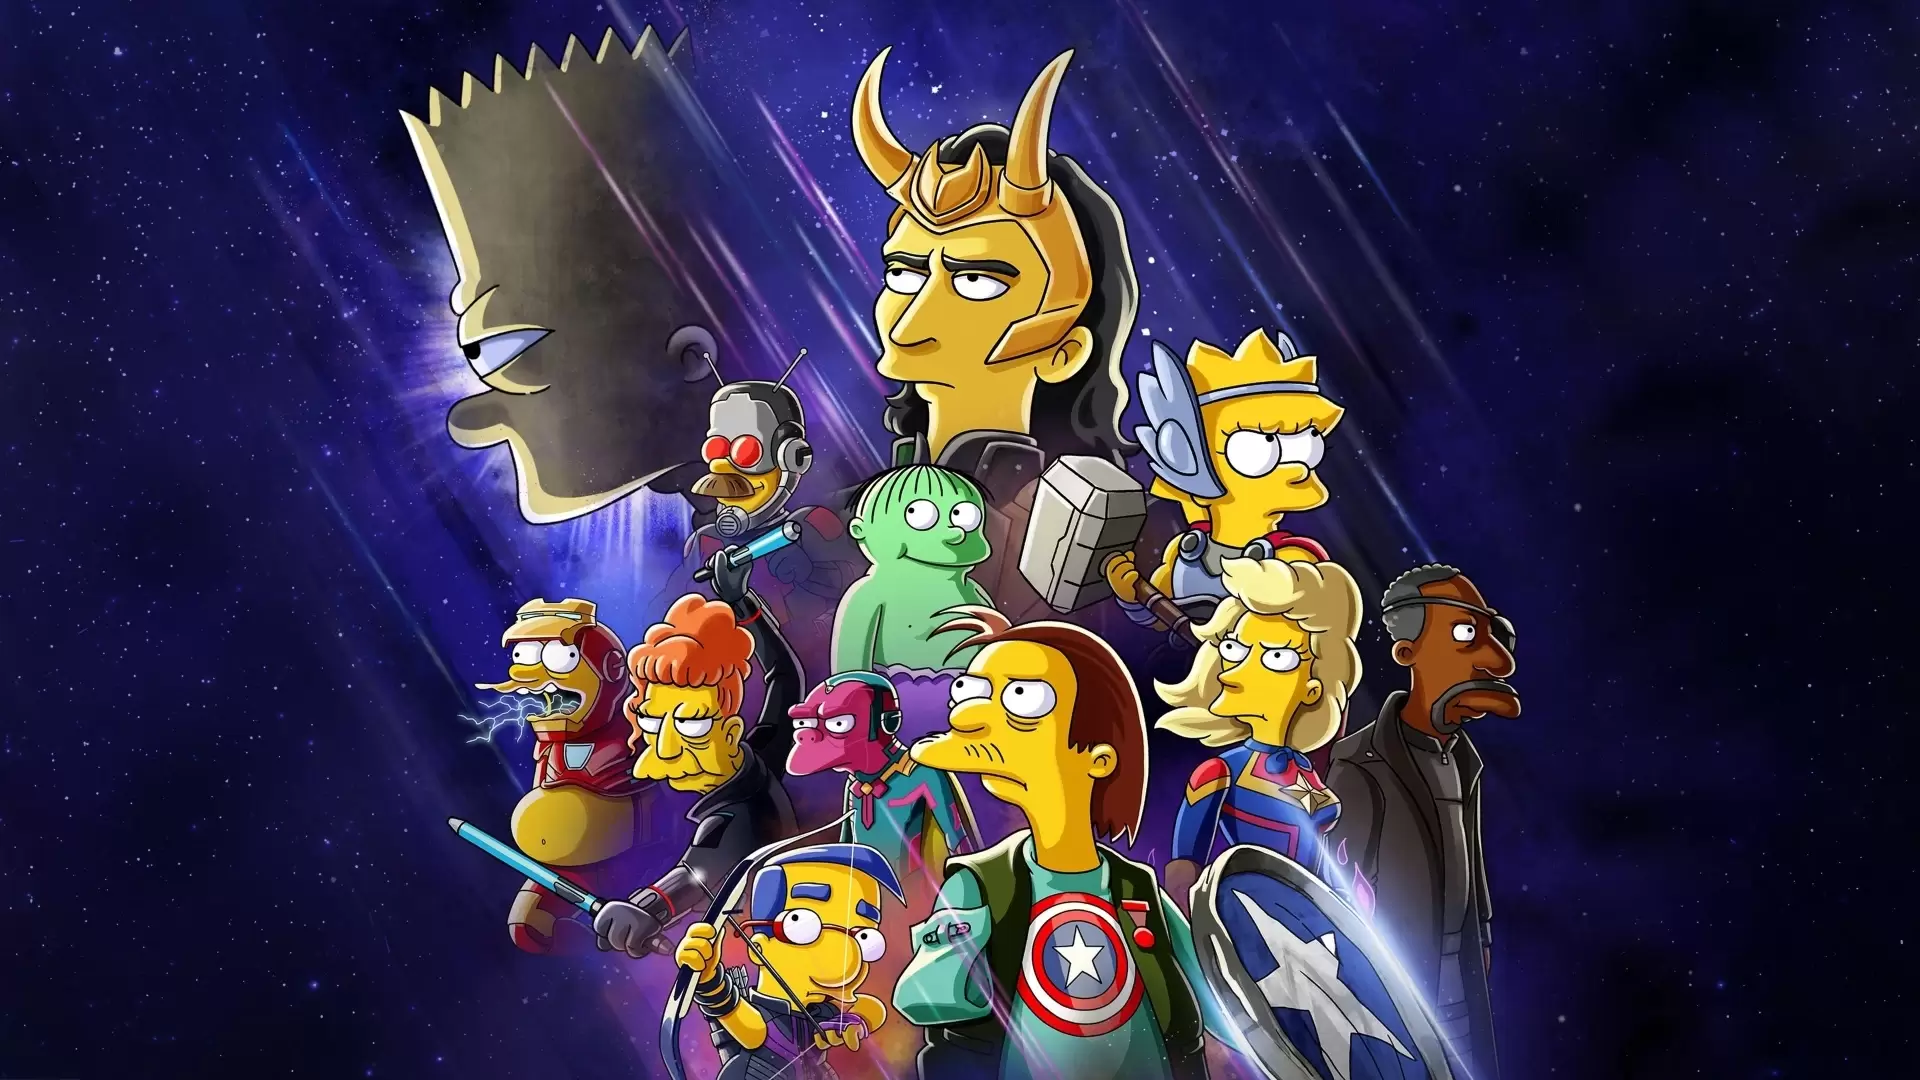 دانلود انیمیشن The Simpsons: The Good, the Bart, and the Loki 2021 (سیمپسون ها: خوب, بارت و لوکی) با تماشای آنلاین